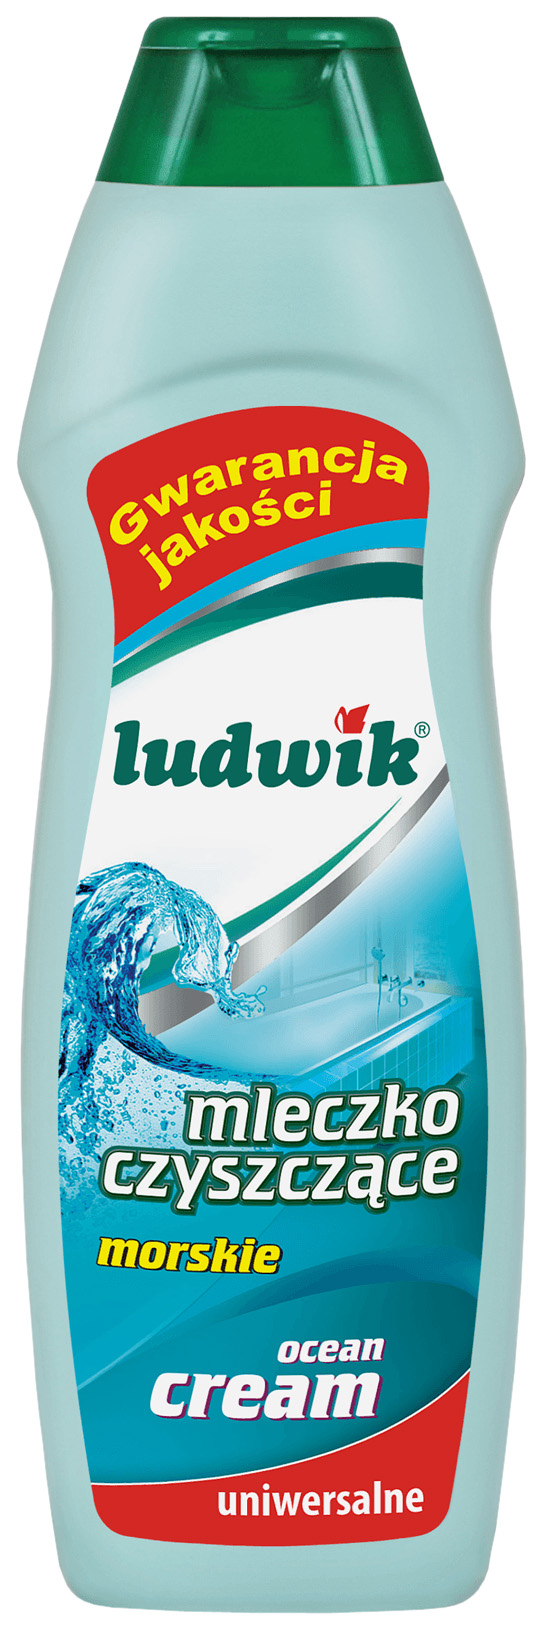 фото Универсальное чистящее средство ludwik молочко морское 300 мл